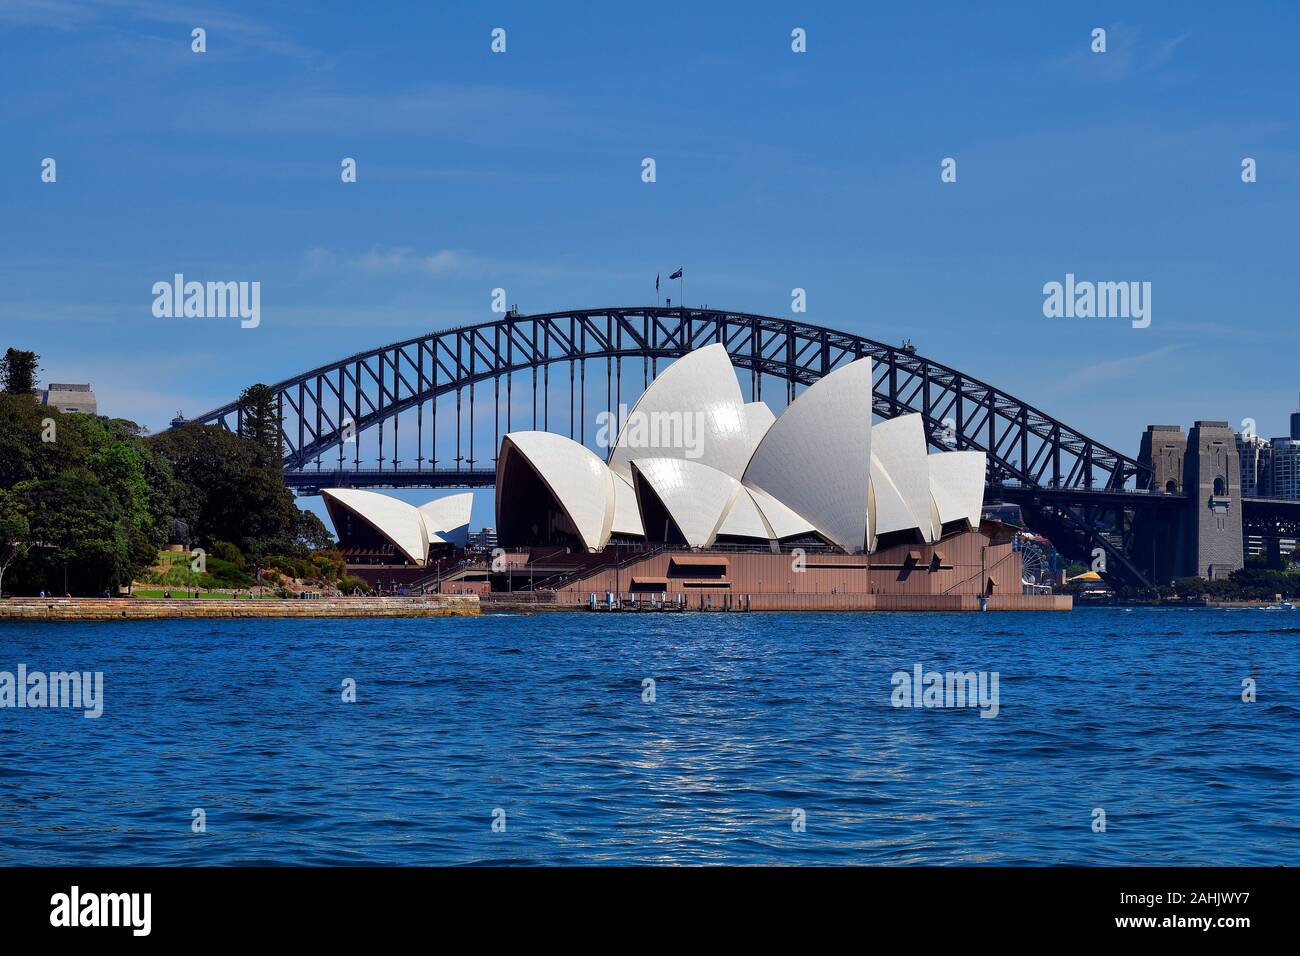 Sydney, NSW, Australien - Oktober 28, 2017: Opery und Sydney Harbour Bridge, beeindruckende Sehenswürdigkeiten und touristische Attraktionen in der Hauptstadt von N Stockfoto